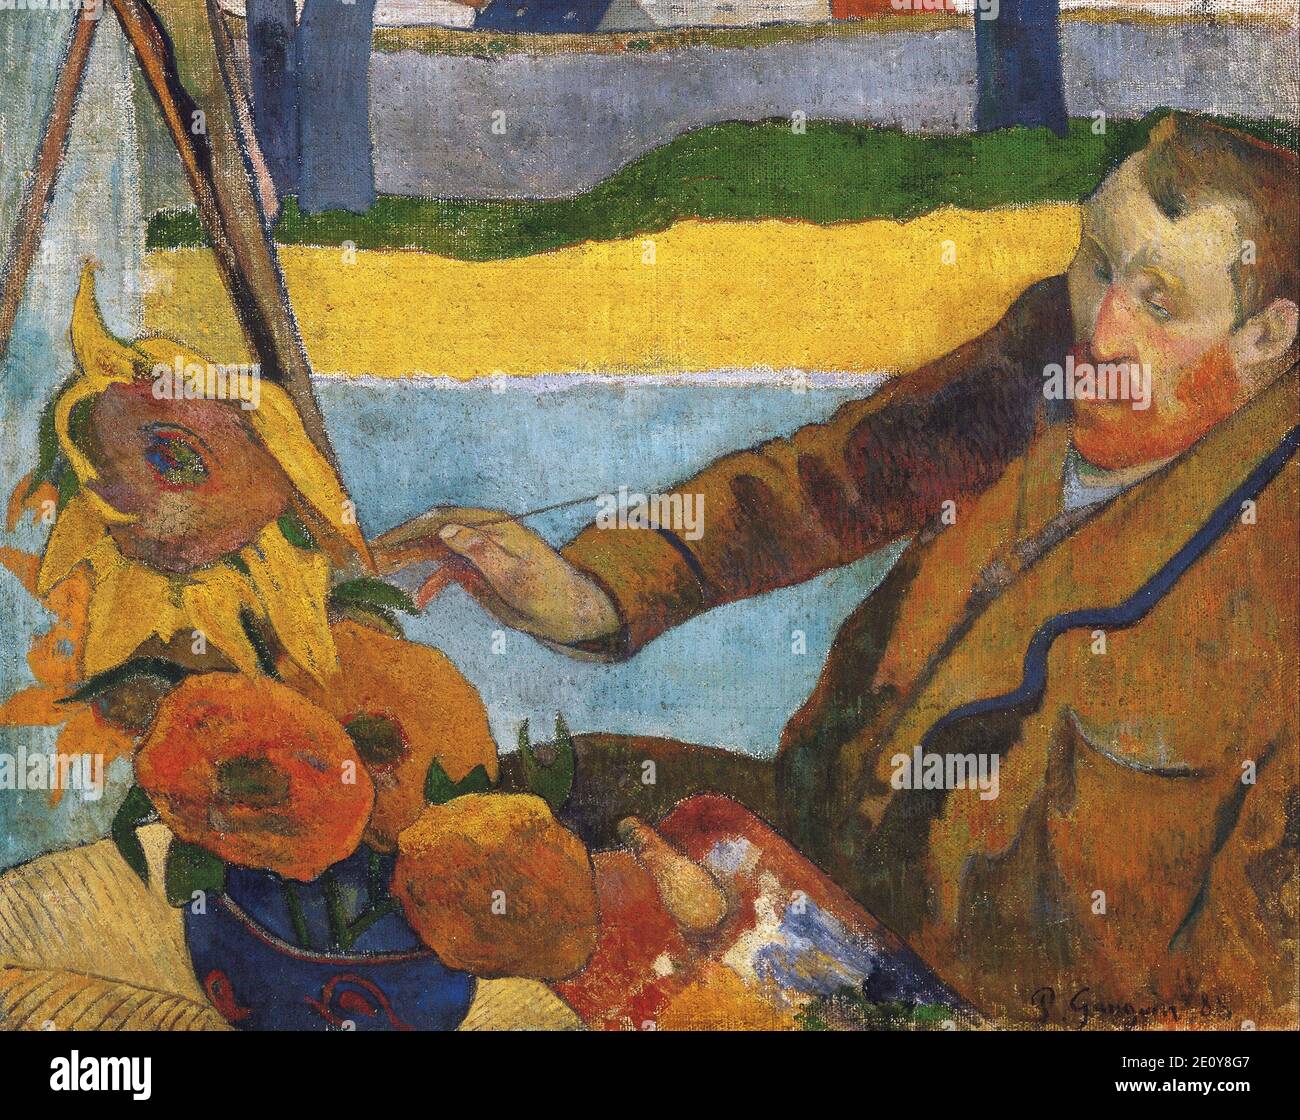 Le portrait de Vincent Van Gogh par Paul Gauguin 1888. Musée Van Gogh à Amsterdam, pays-Bas Banque D'Images